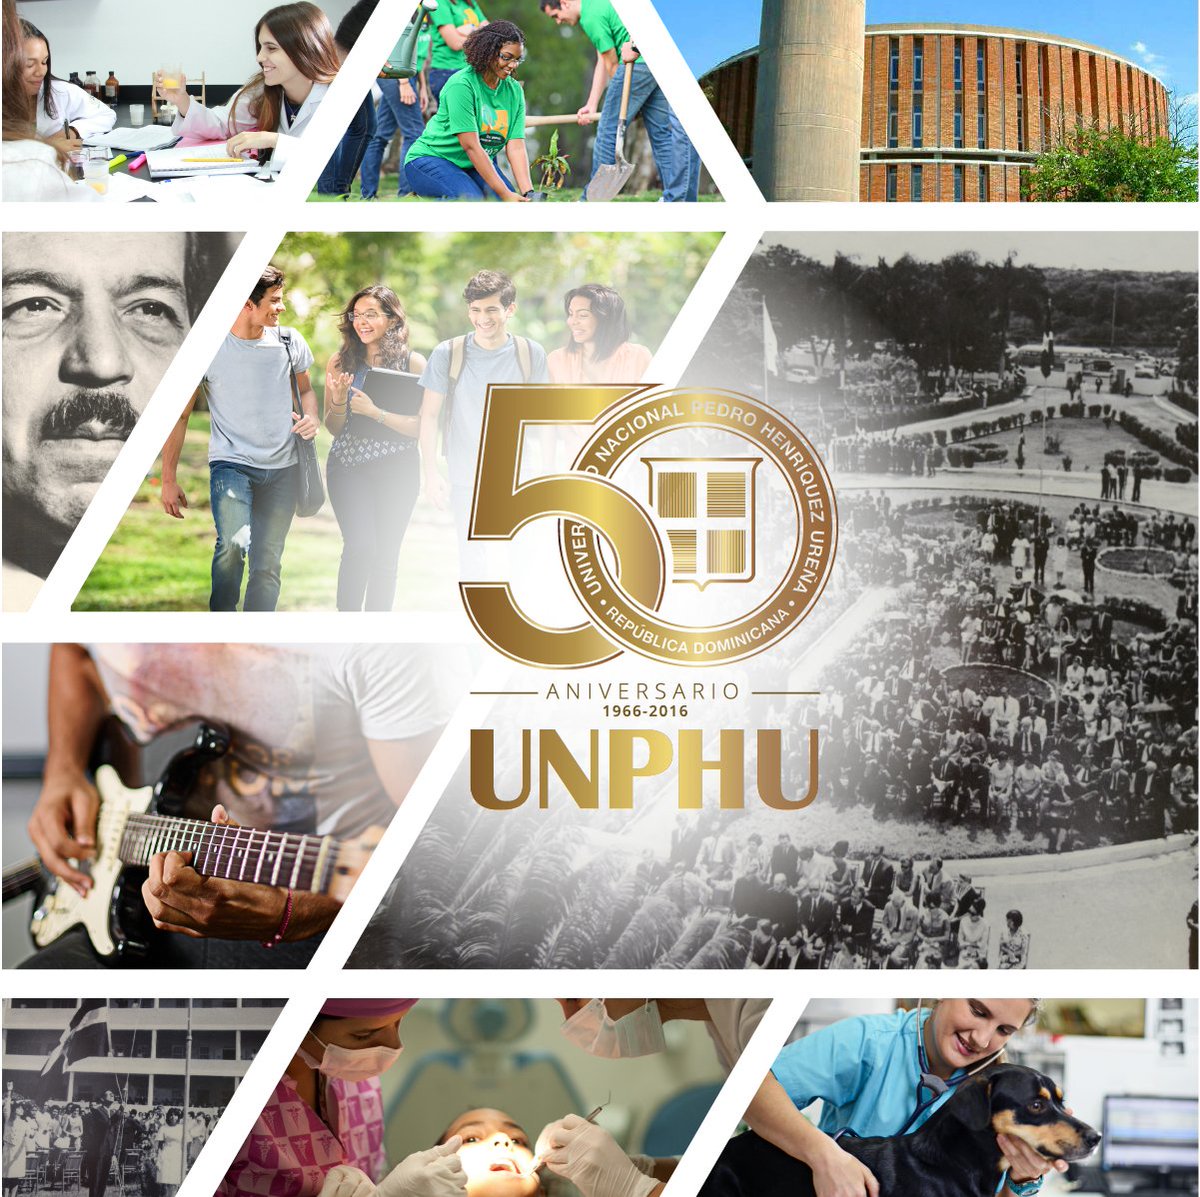 Unphu Na Twitteru Hoy Celebramos 50 Anos Transitando Un Sendero Dorado De Aportes A La Vida Nacional Felicidades Familia Unphu